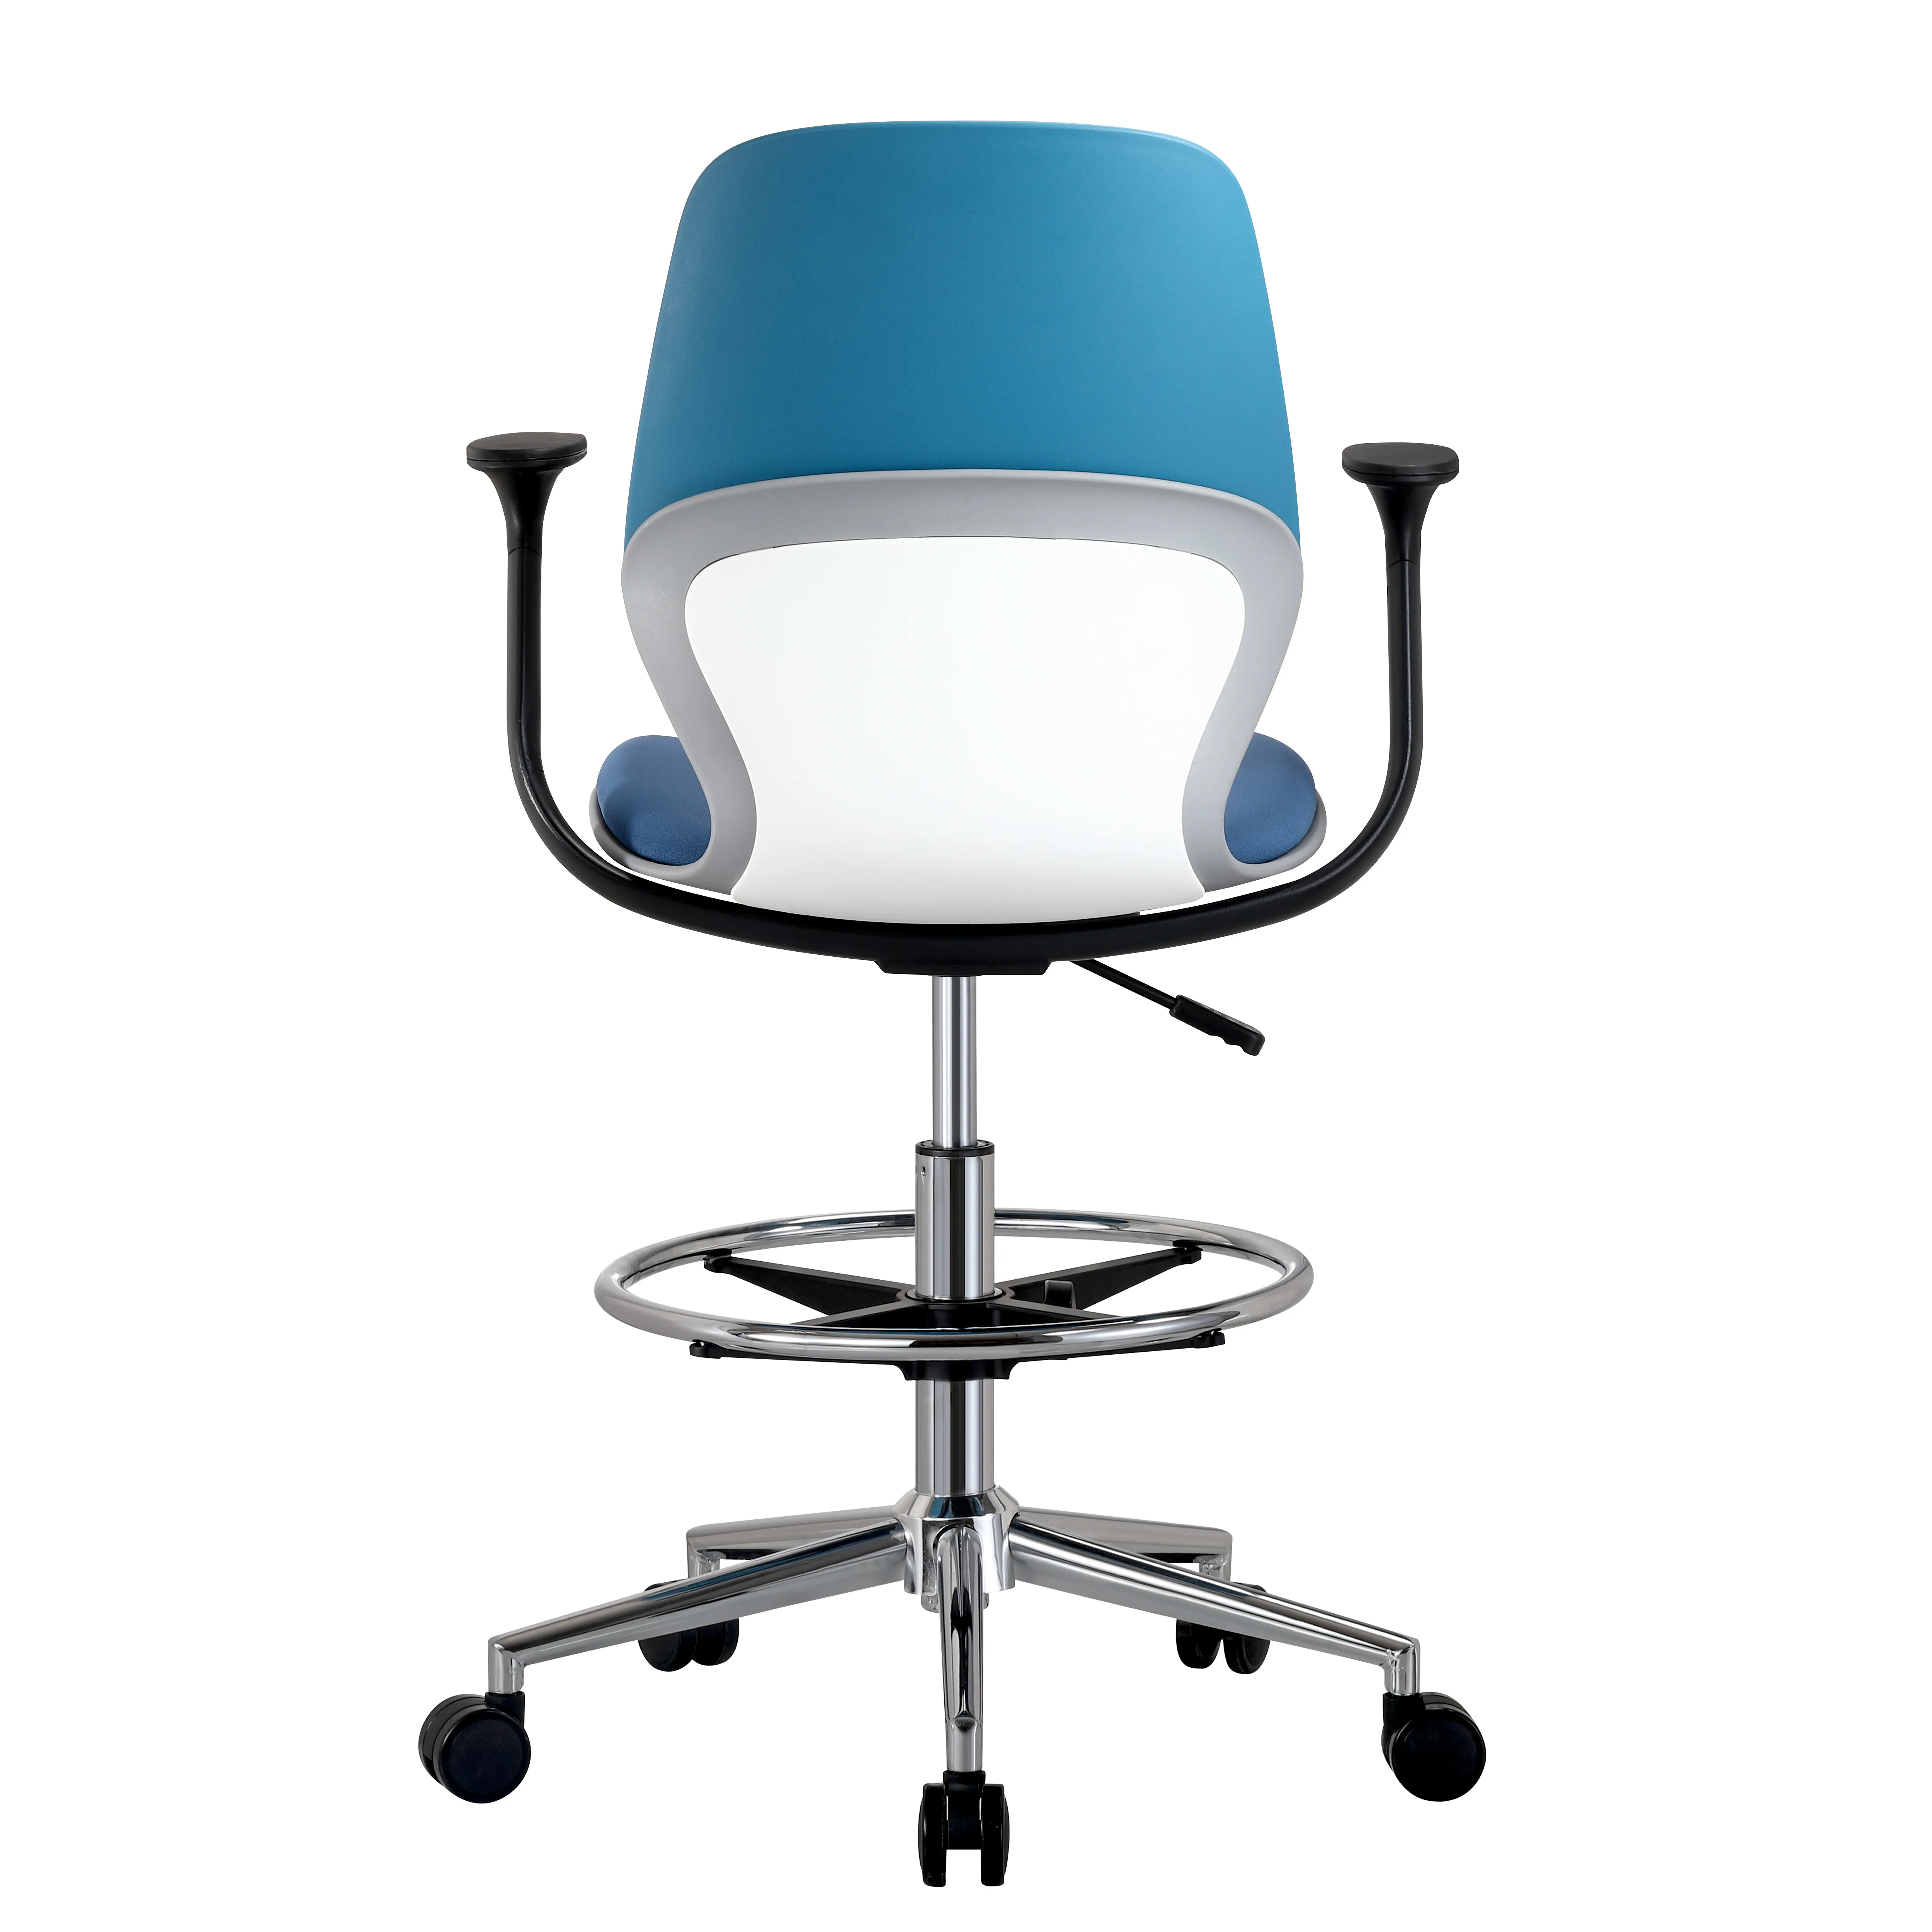 Cadeira giratória confortável e barata para escritório em casa, móveis ergonômicos para escritório, atacado